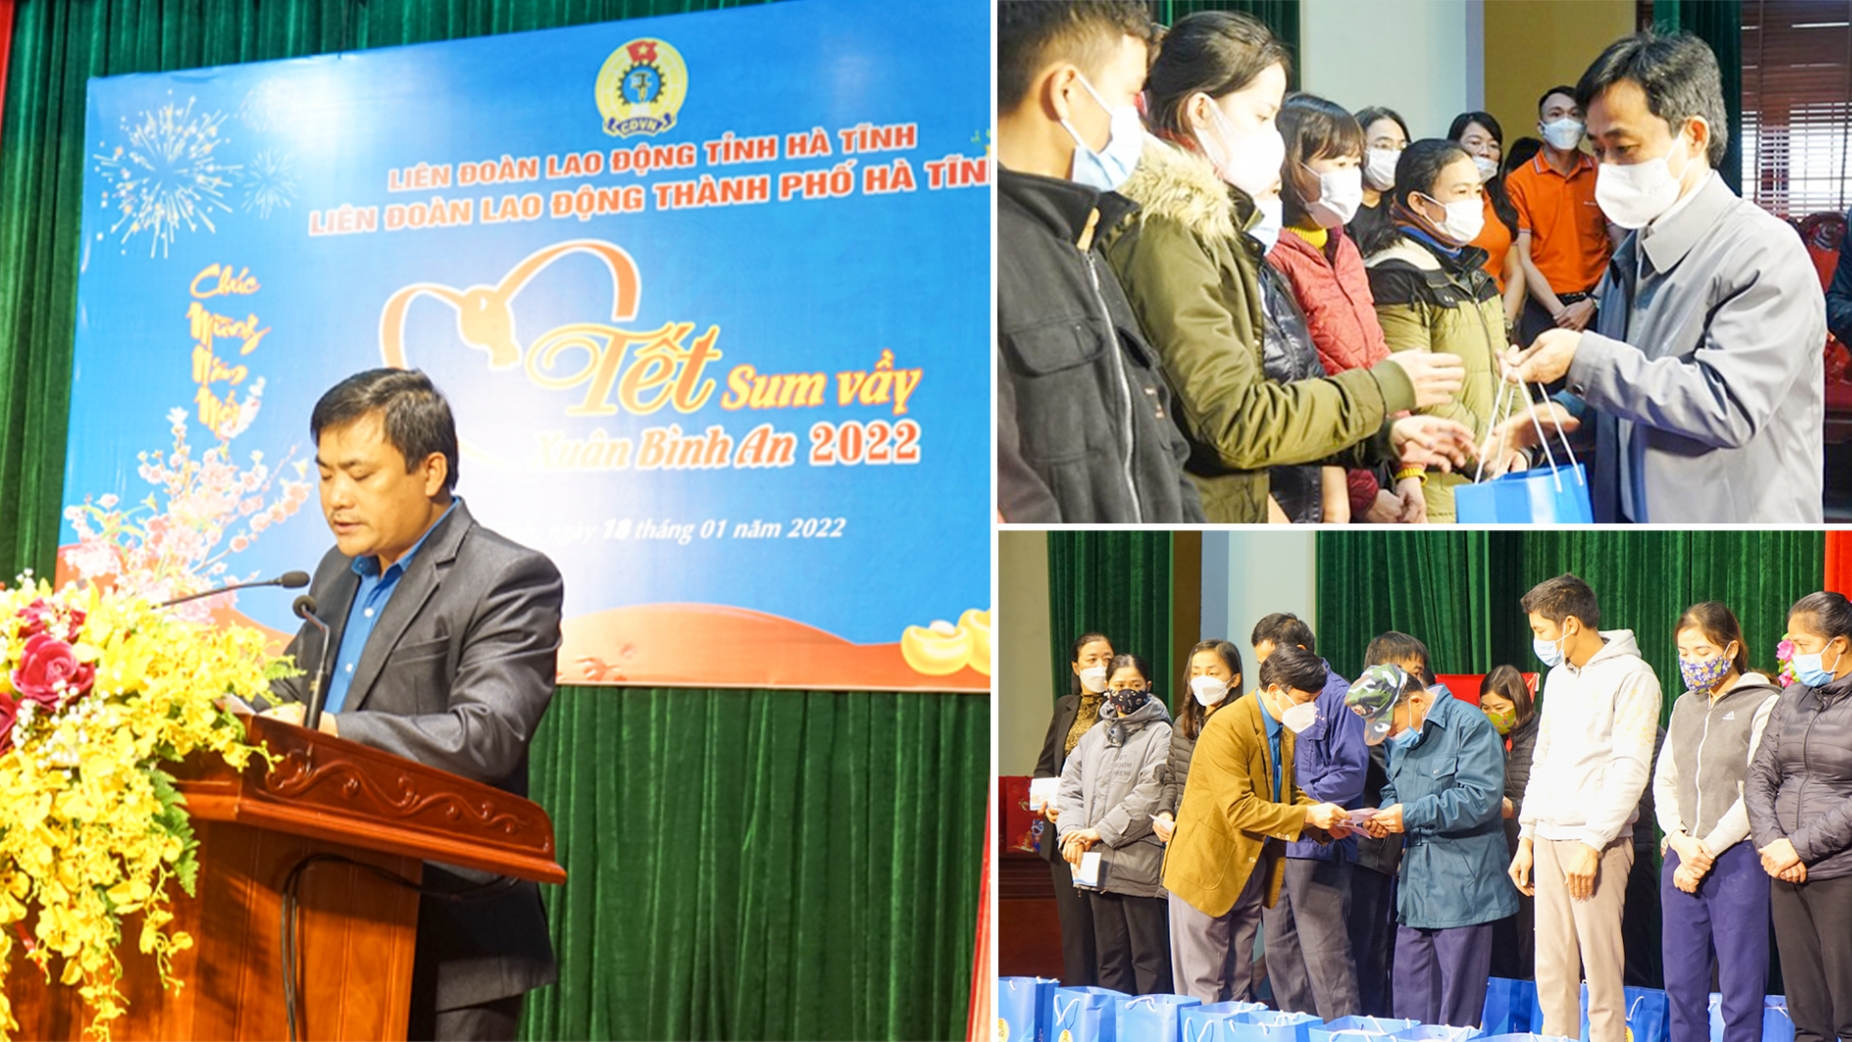 Phó Bí thư Tỉnh ủy Hà Tĩnh tặng quà "Tết sum vầy" cho người lao động